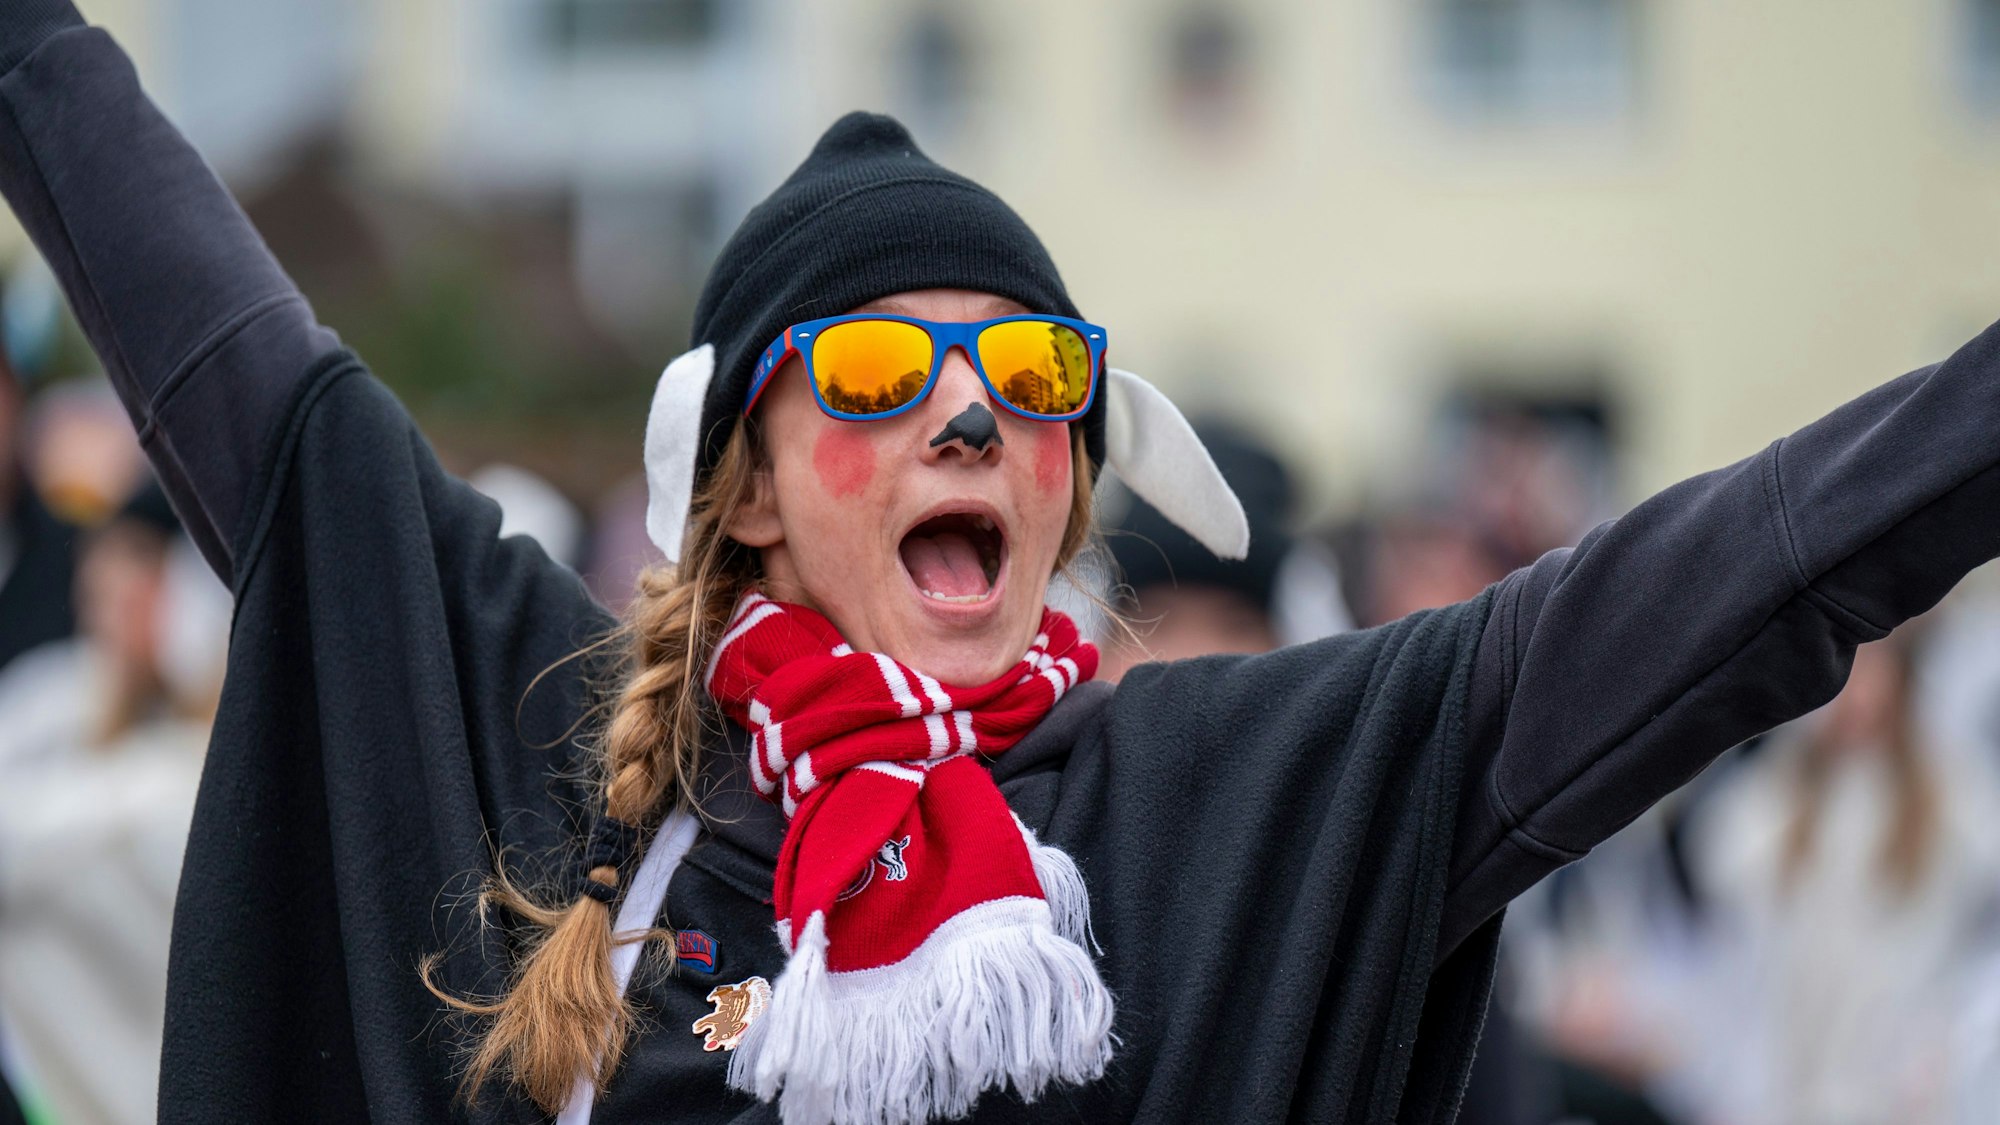 Die gute Laune war den Teilnehmenden beim Karnevalszug im Merheimer Veedel am 10. Februar anzusehen. Eine Frau in schwarzem Kostüm, mit Schal des 1. FC Köln und Sonnenbrille, jubelt.